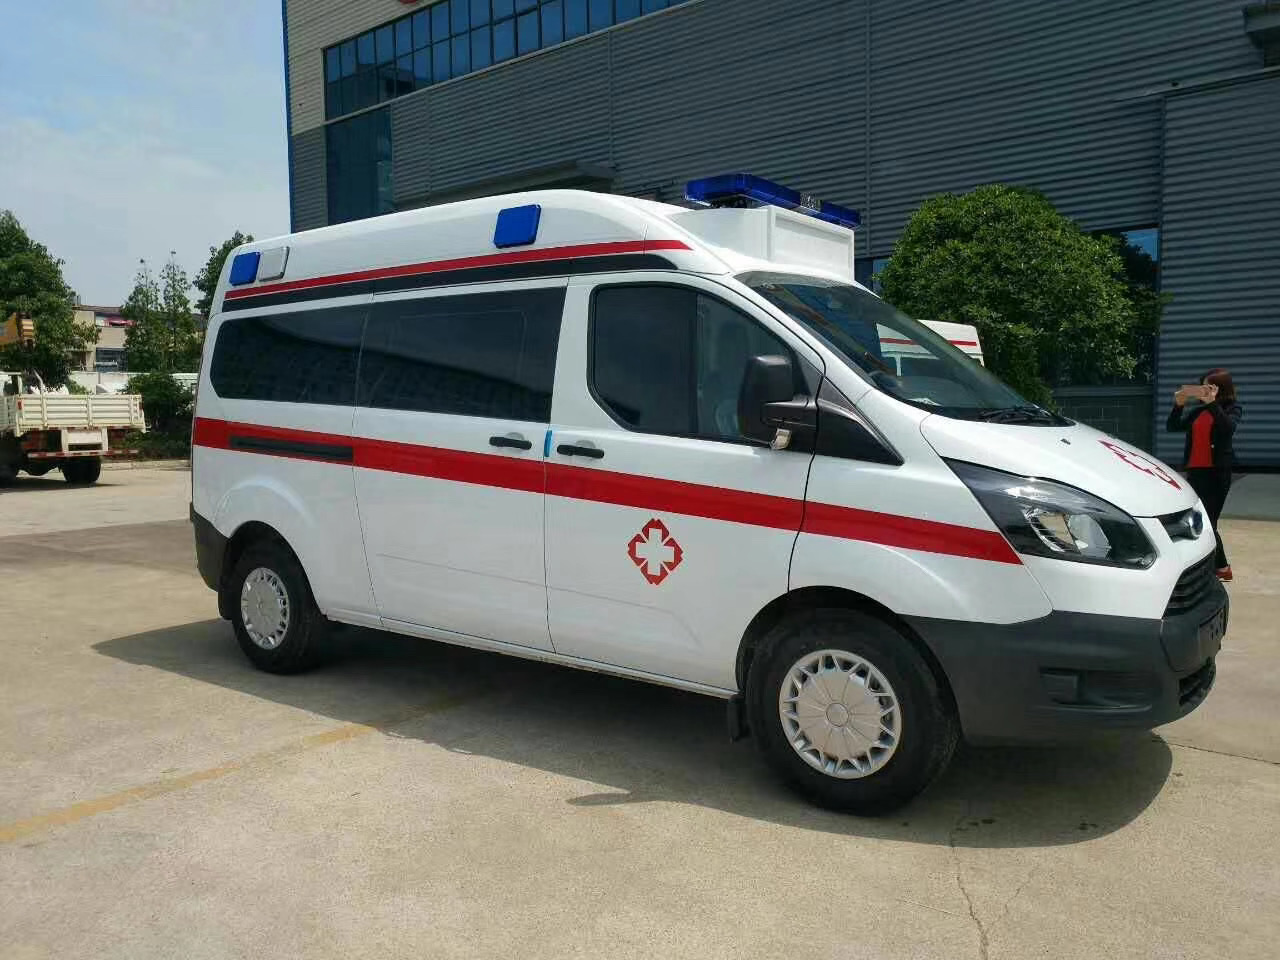 汤旺县出院转院救护车